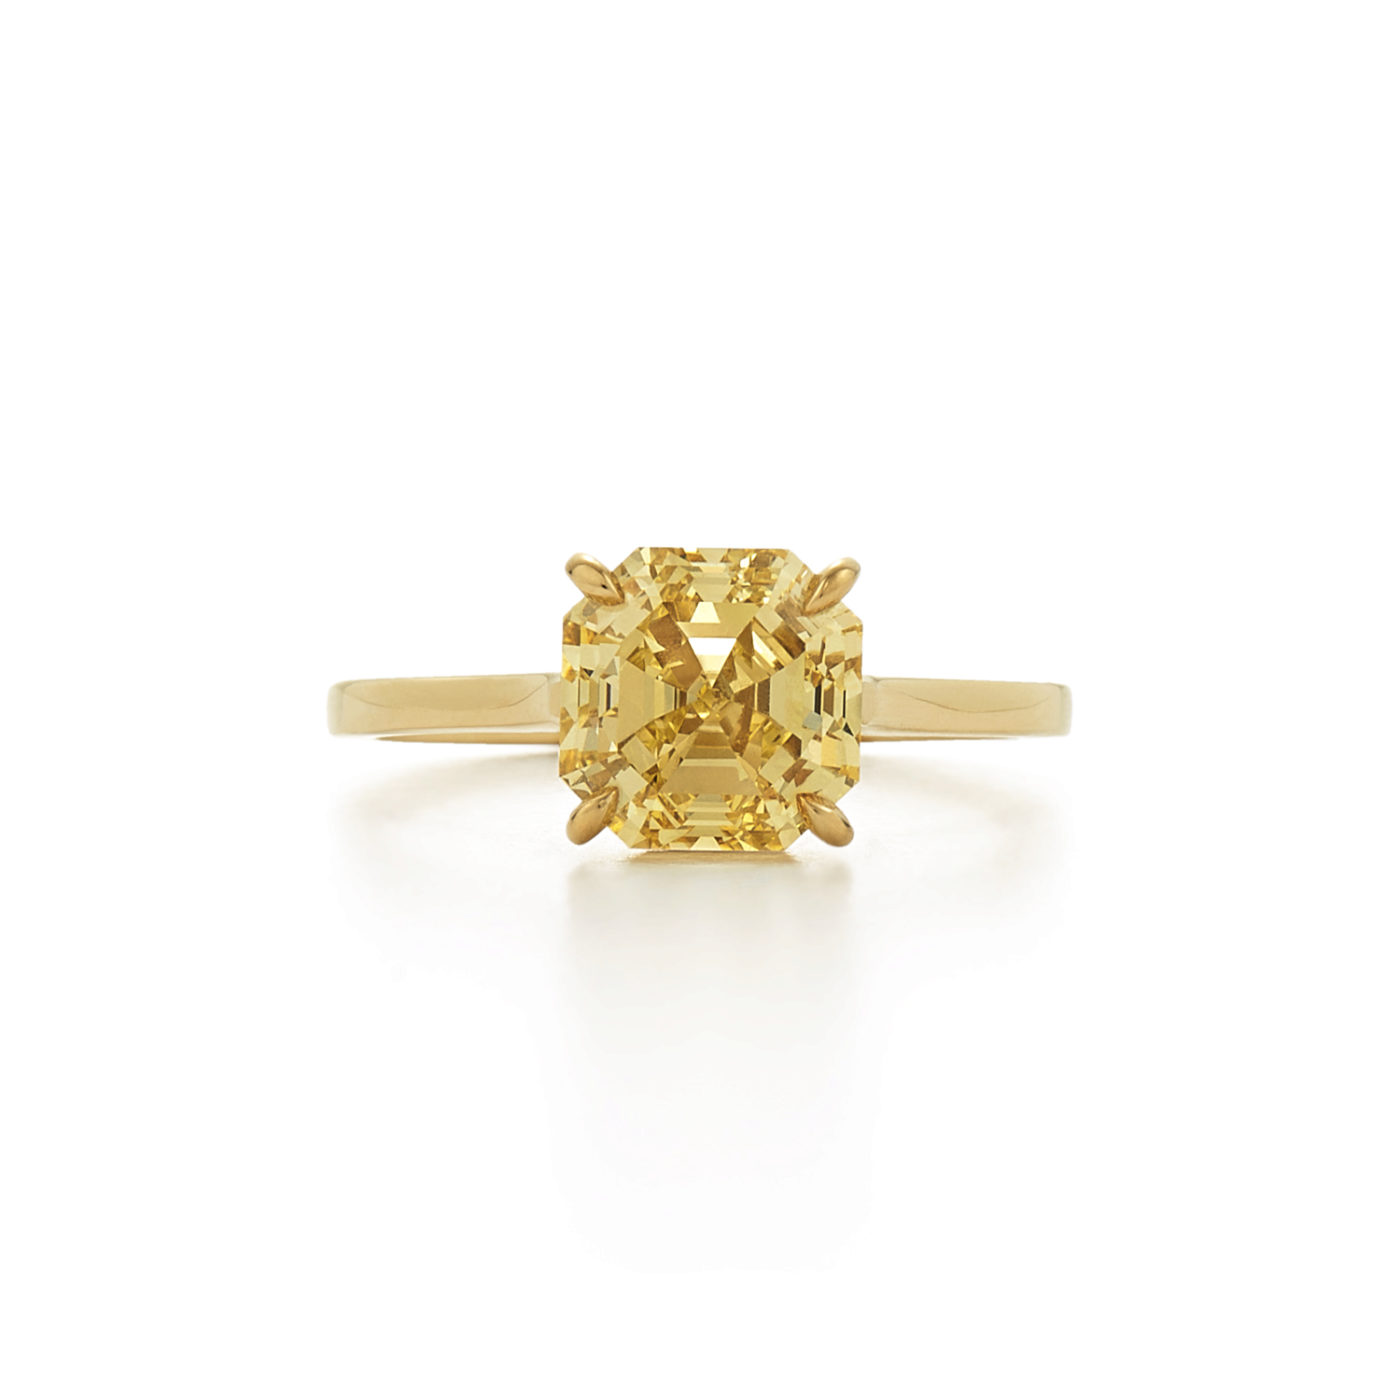 Asscher Cut Yellow Diamond in 18K Yellow Gold